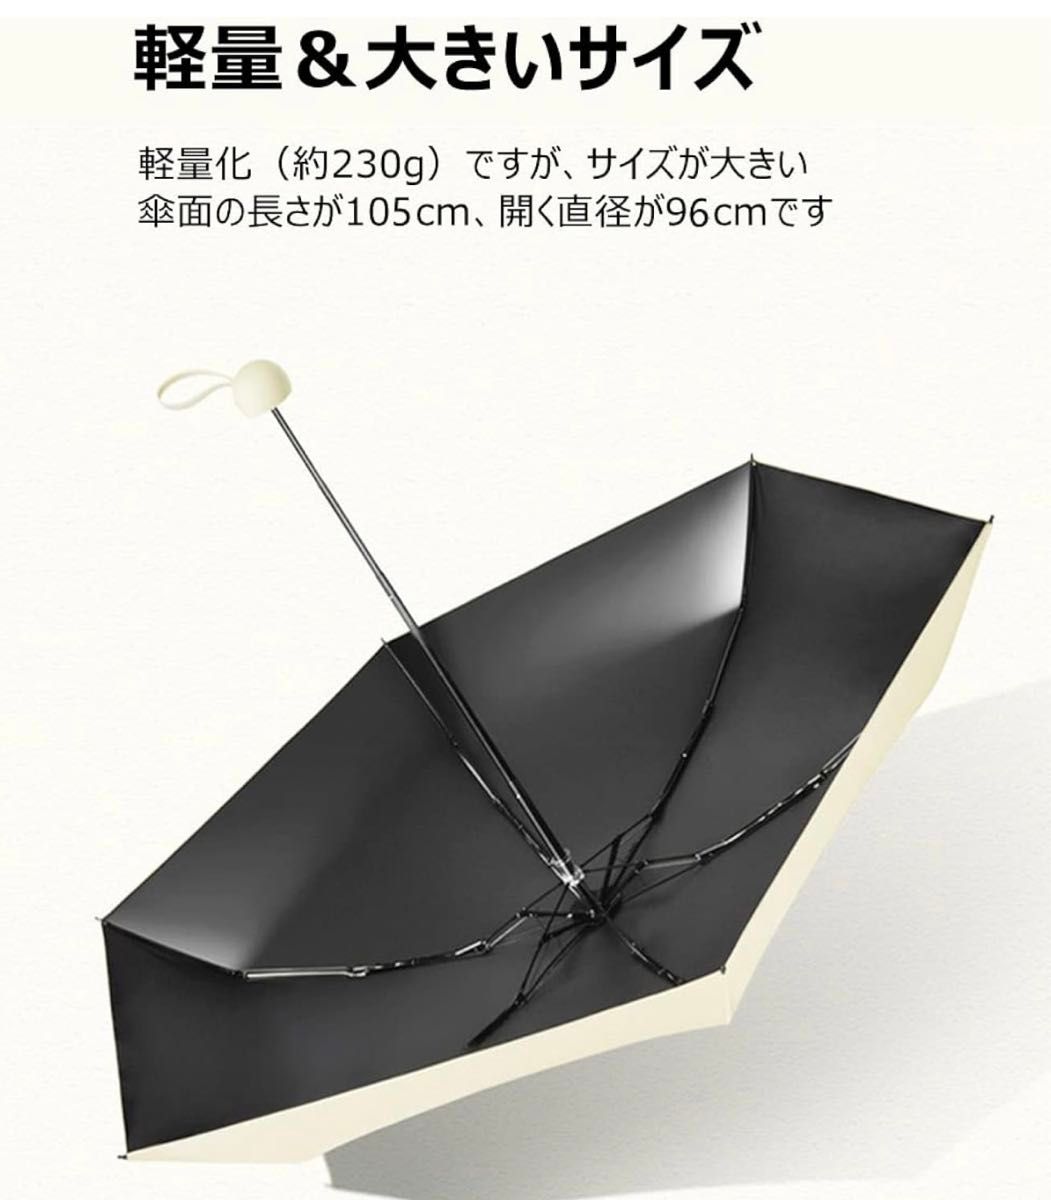 新品 日傘 折りたたみ傘 レディース UVカット100 遮光 軽量 コンパクト